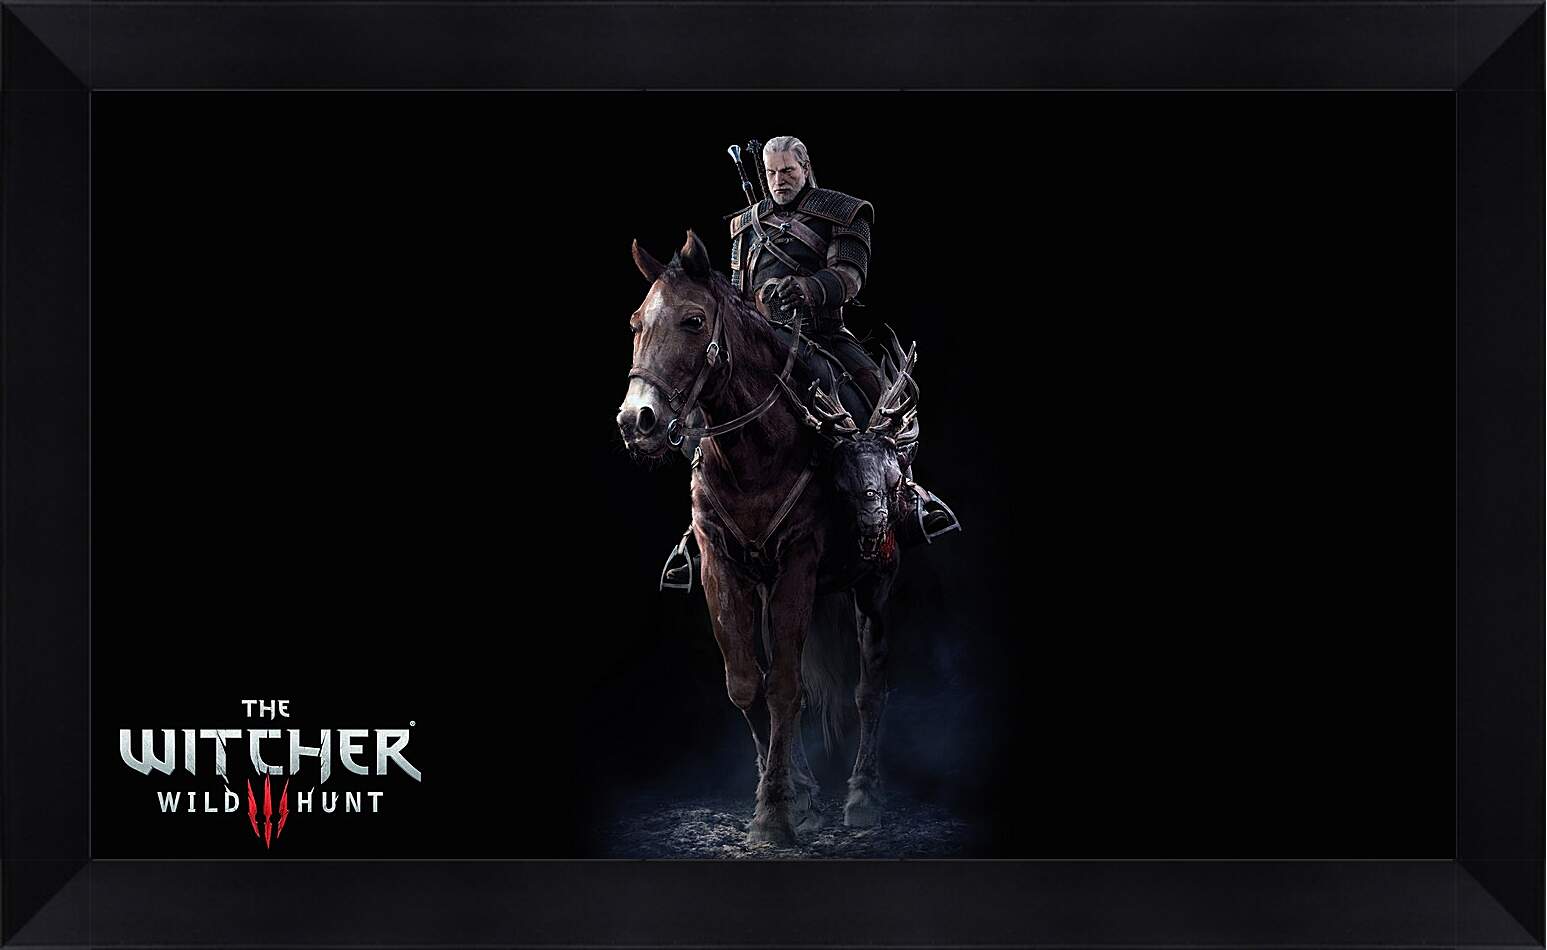 Картина в раме - The Witcher 3: Wild Hunt (Ведьмак), Геральт верхом на Плотве